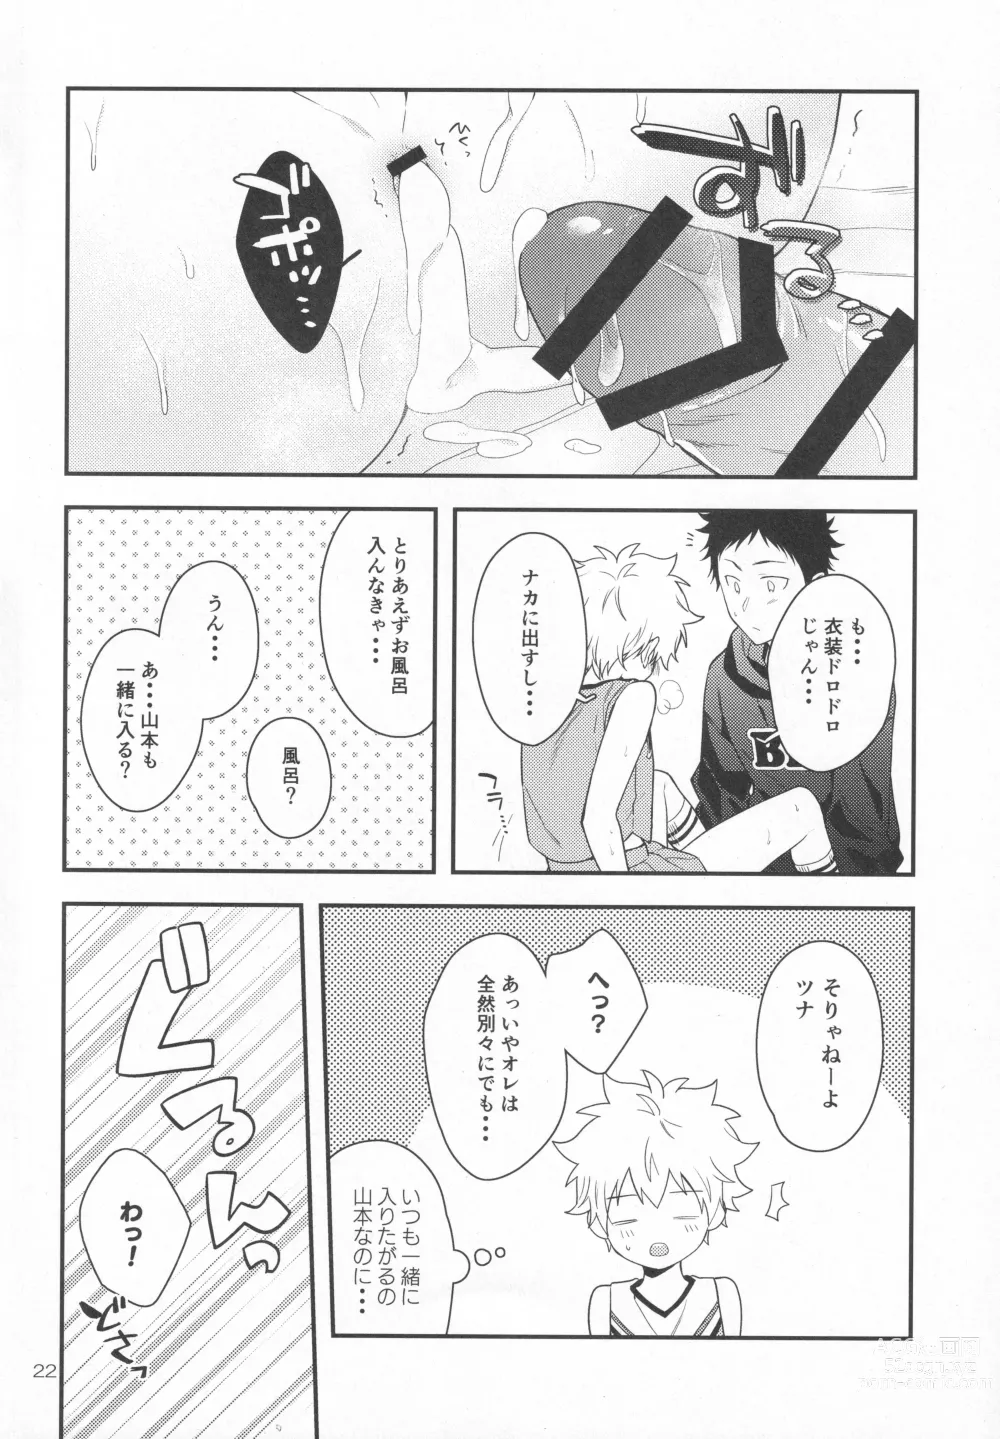 Page 21 of doujinshi Hooray Hooray! Yakyuu Shounen!